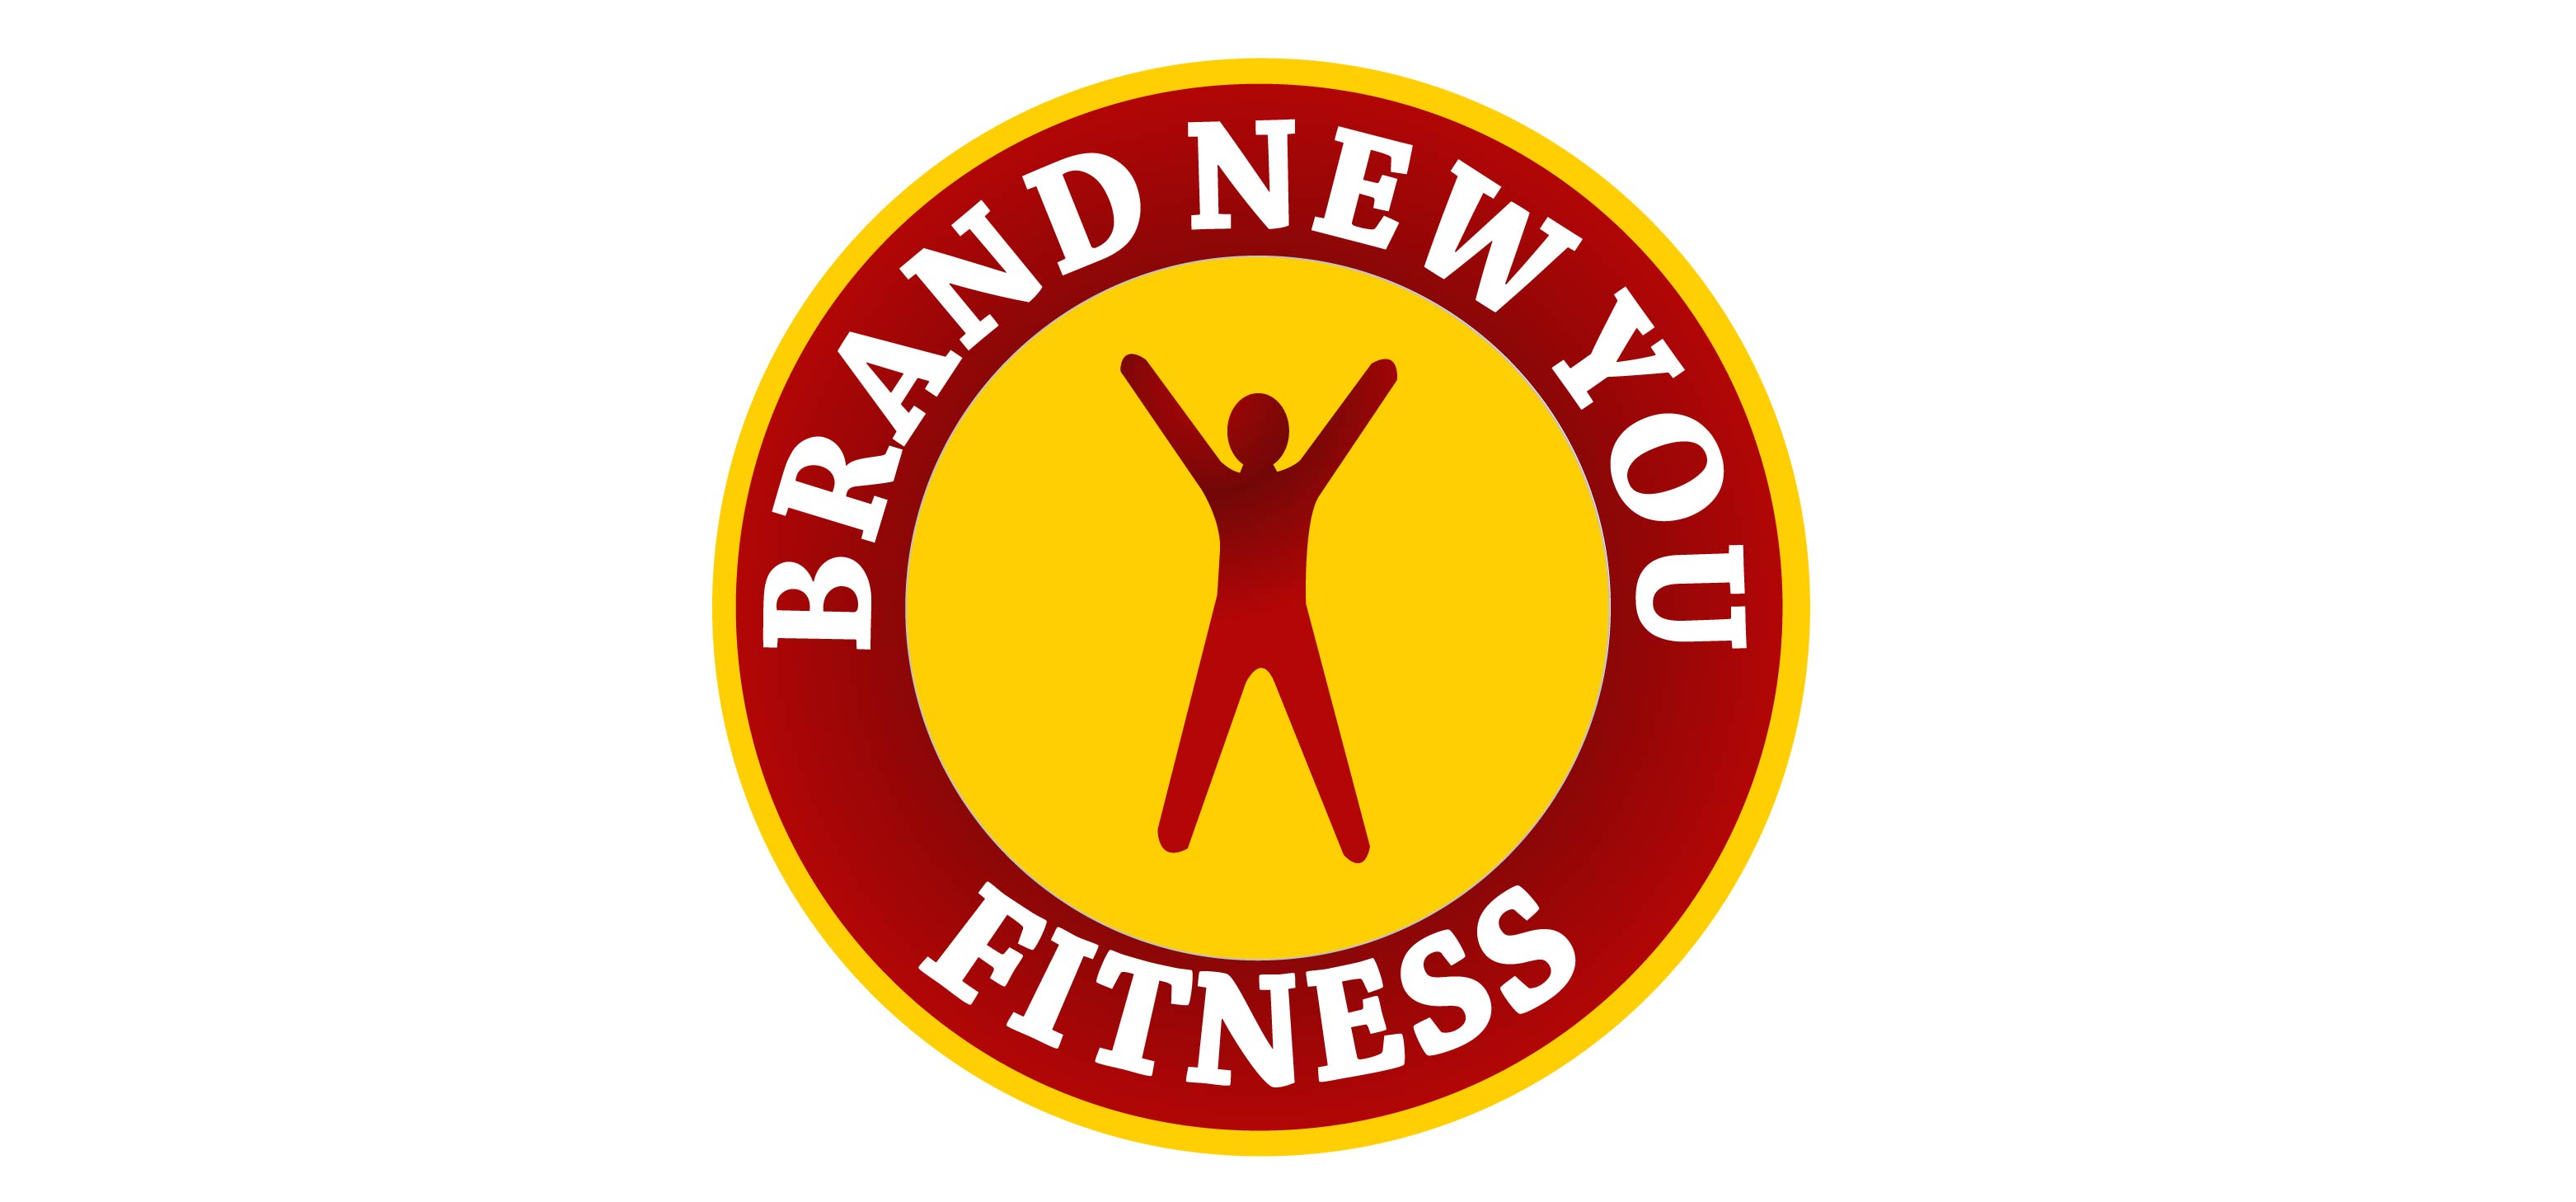 Brand-New-You-Fitness-Logo.jpg